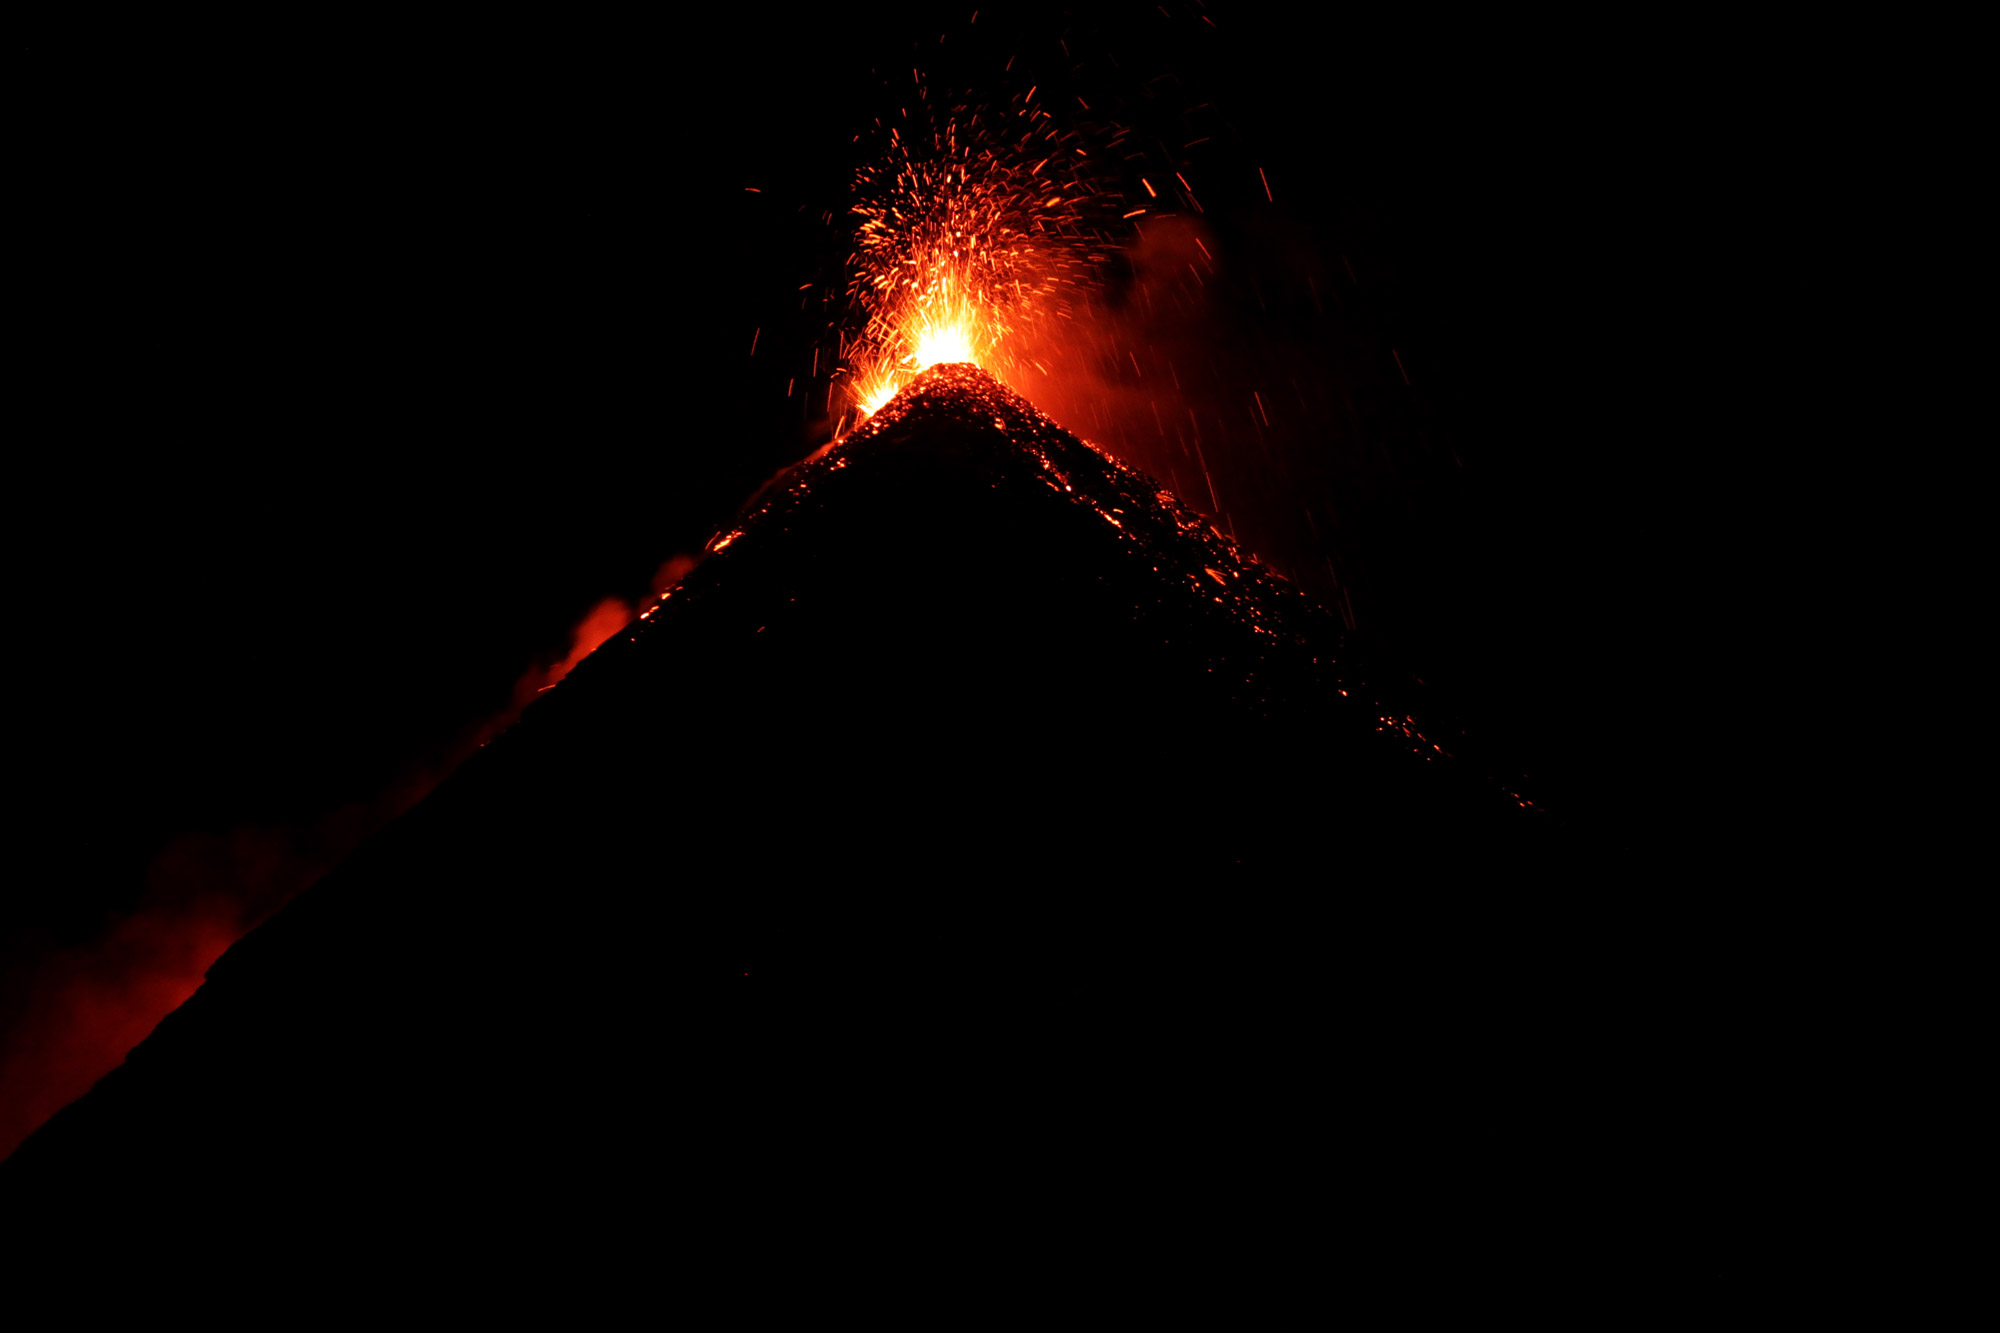 Guatemala 2015 - dag 4 - De vuurspuwende Volcán de Fuego